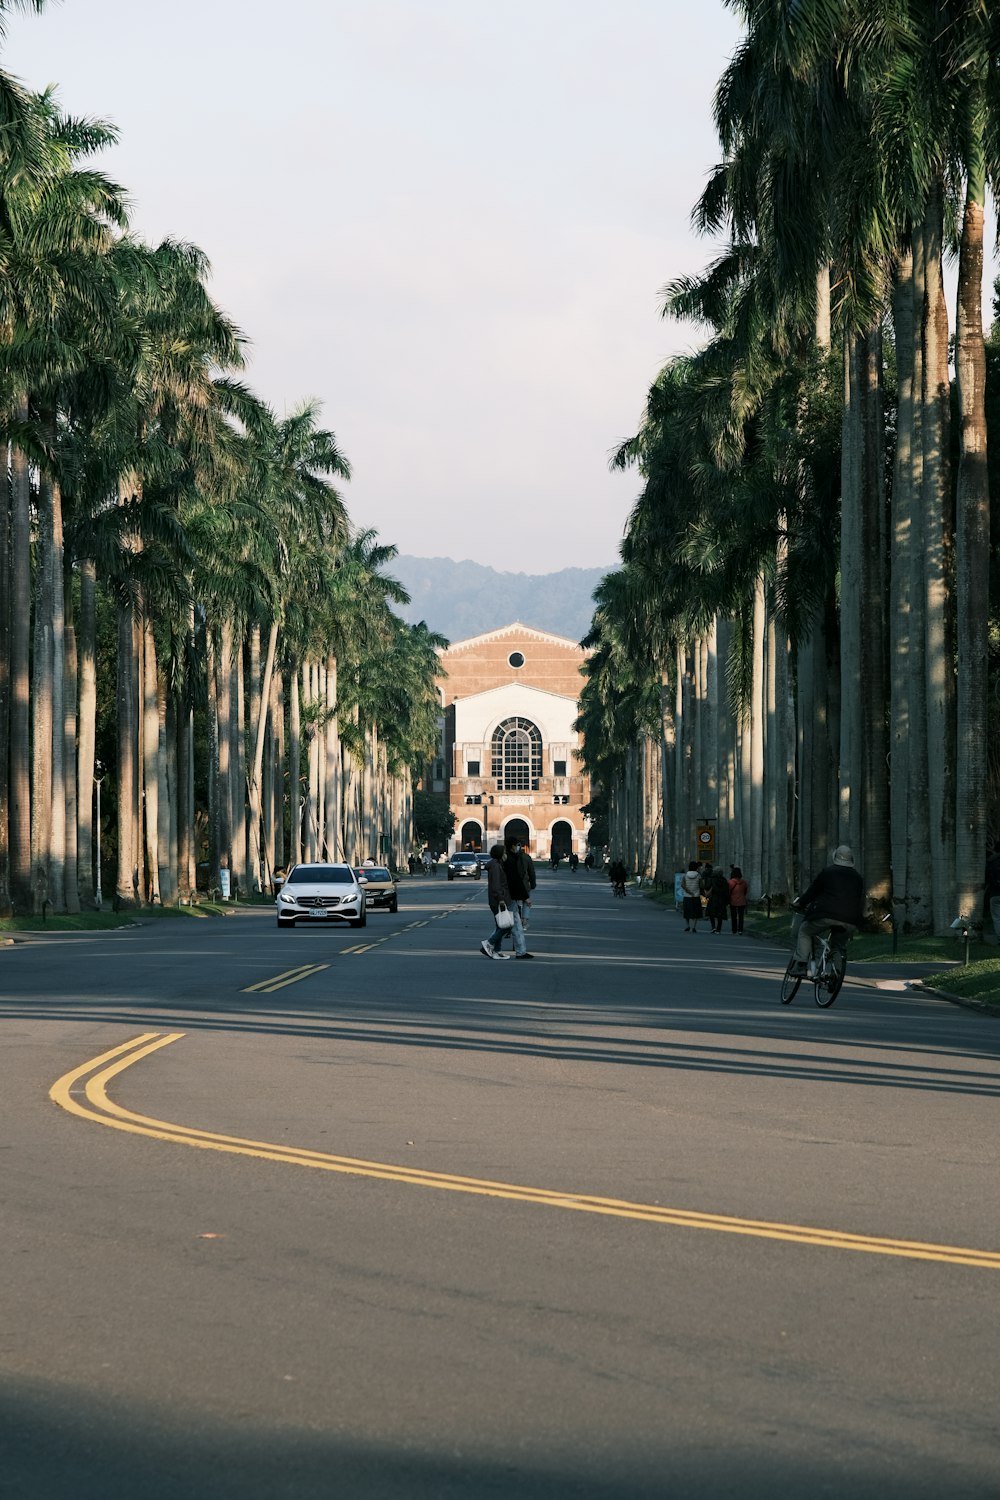 une personne à vélo dans une rue à côté de palmiers